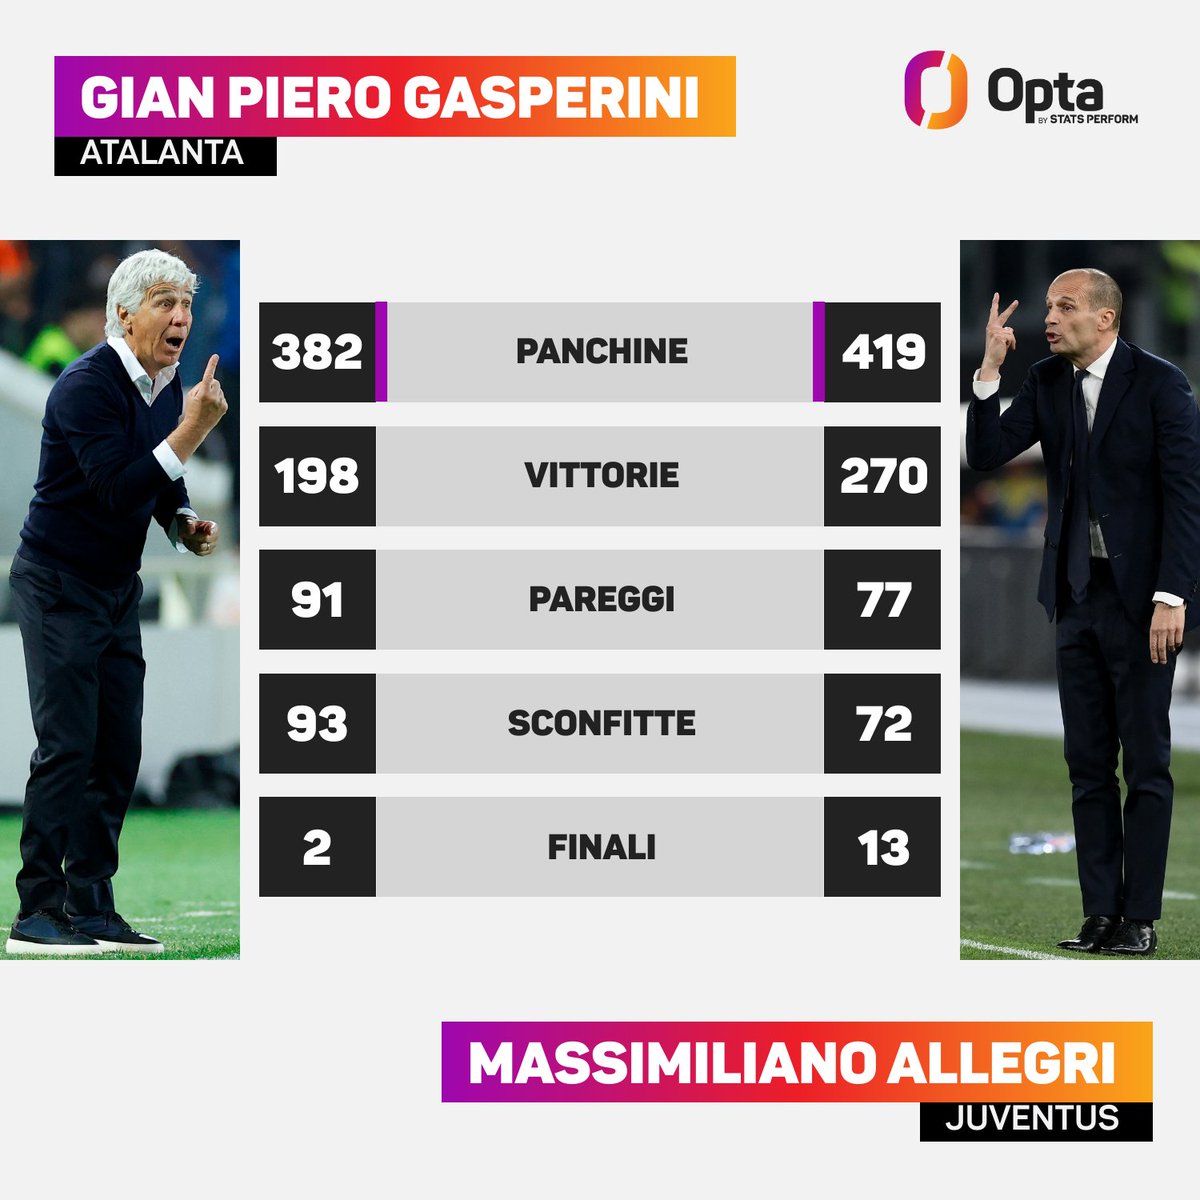 1 & 2 - L'allenatore con più panchine nella storia dell'Atalanta (#Gasperini - 382) e il secondo con più panchine nella storia della Juventus (#Allegri - 419, Trapattoni - 596) da quando esiste la Serie A a girone unico, si affrontano stasera in finale di #CoppaItalia. Leggende.